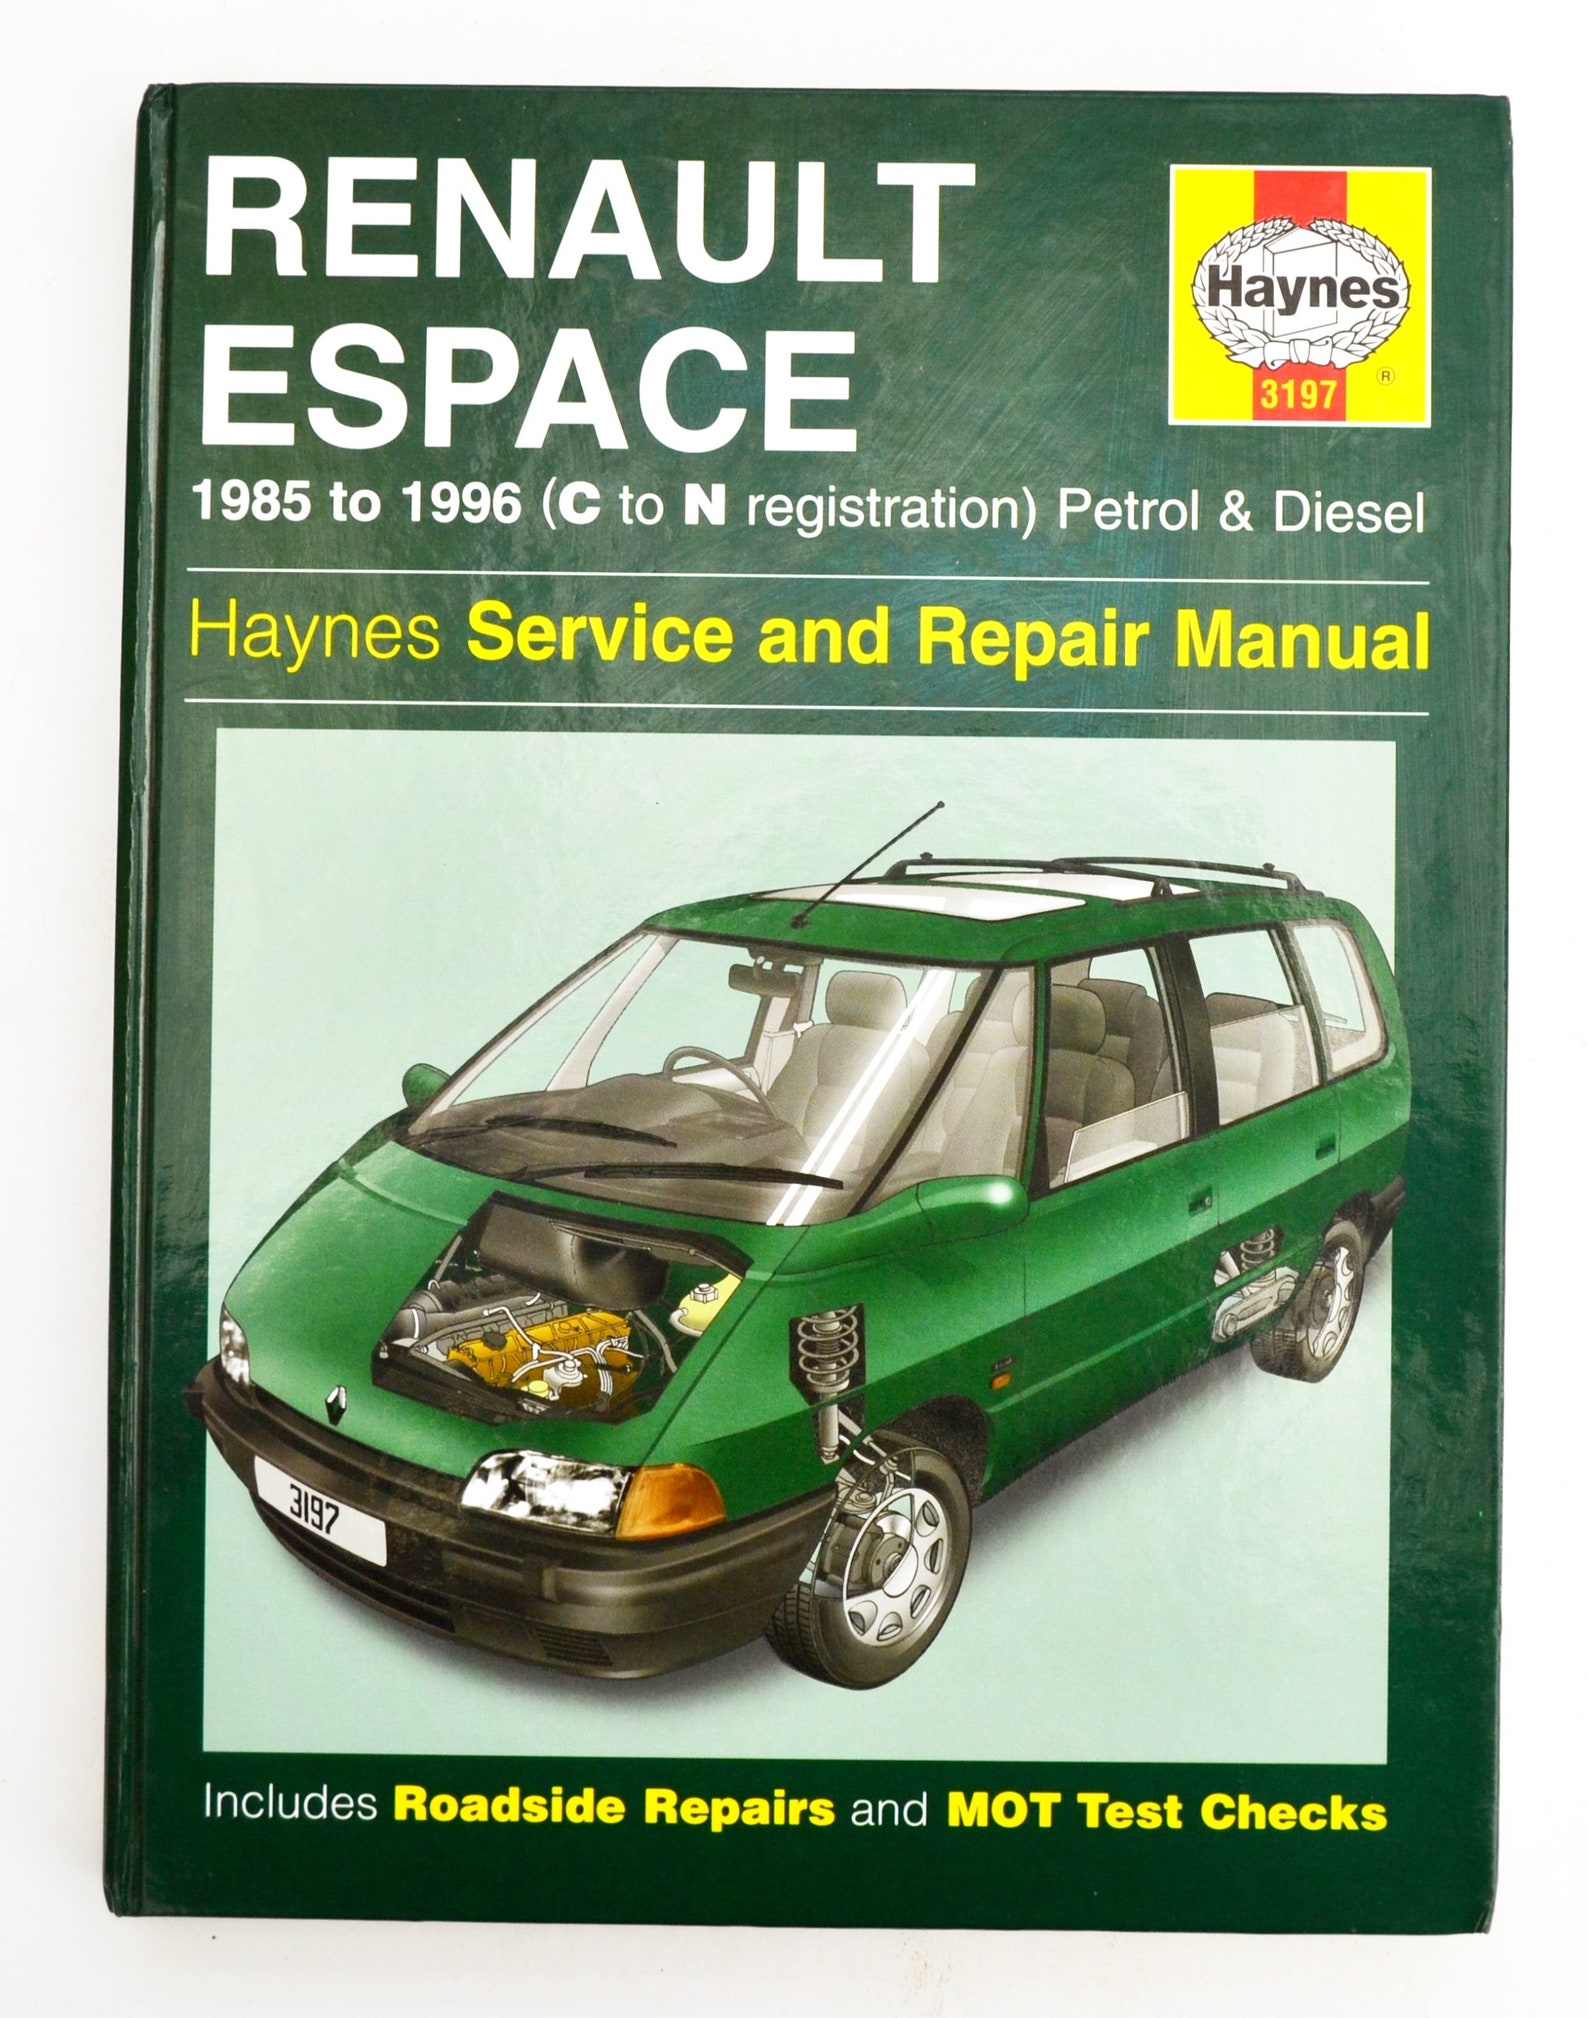 Haynes Renault Owners Workshop Manual Renault Espace Owners | Etsy